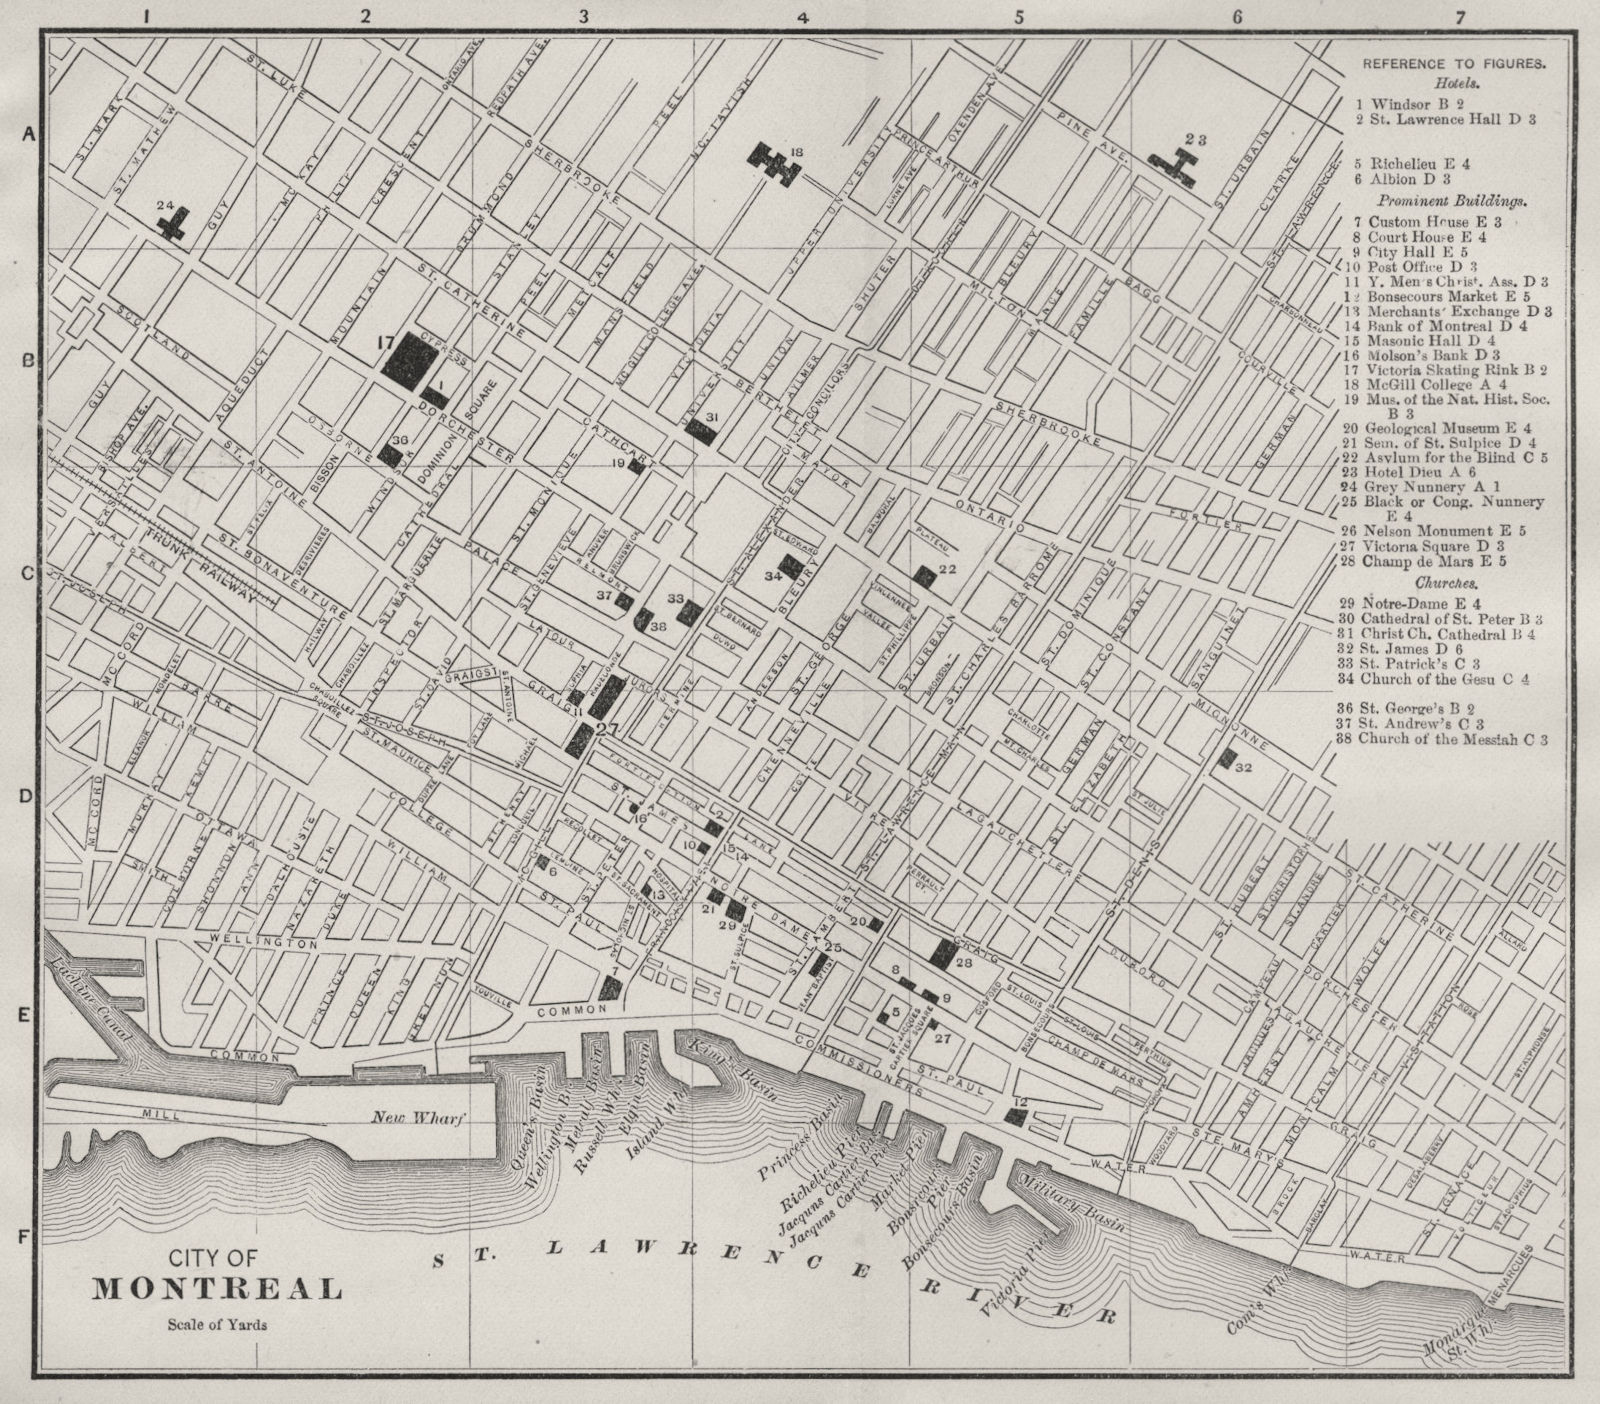 Associate Product MONTRÉAL MONTREAL, QUEBEC QUÉBEC. Antique city plan 1893 old map